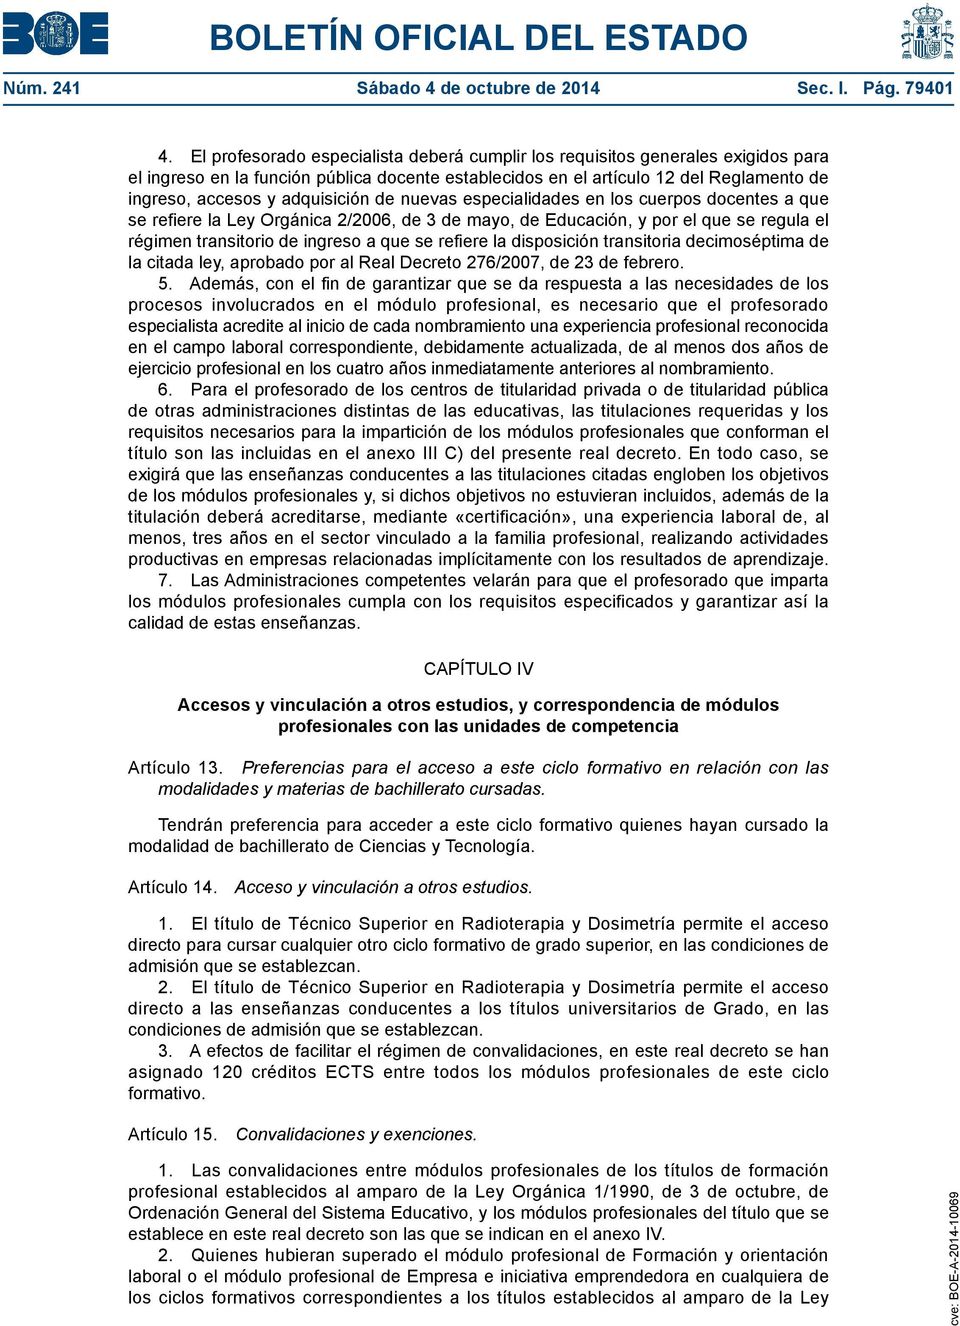 adquisición de nuevas especialidades en los cuerpos docentes a que se refiere la Ley Orgánica 2/2006, de 3 de mayo, de Educación, y por el que se regula el régimen transitorio de ingreso a que se